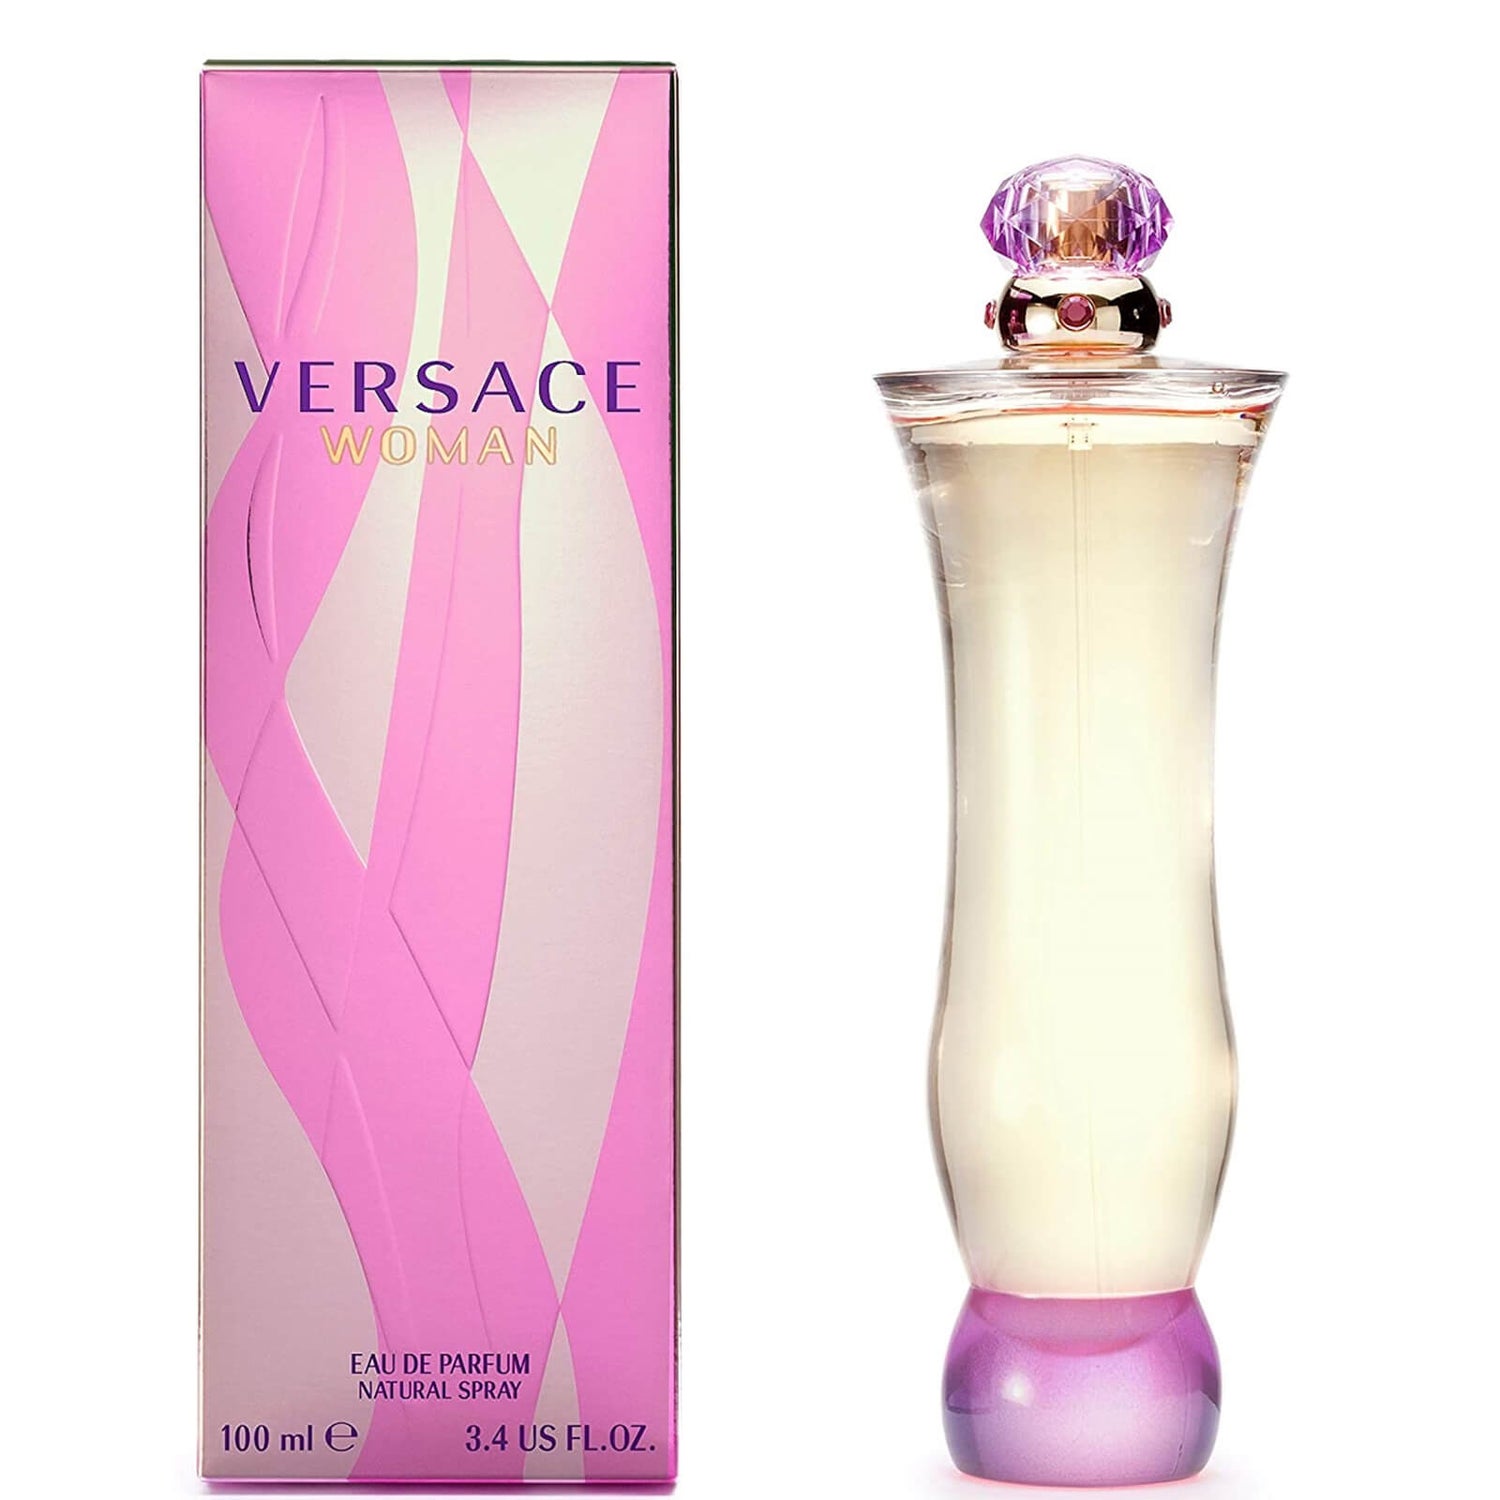 Versace Eau de Parfum 100ml - lookfantastic